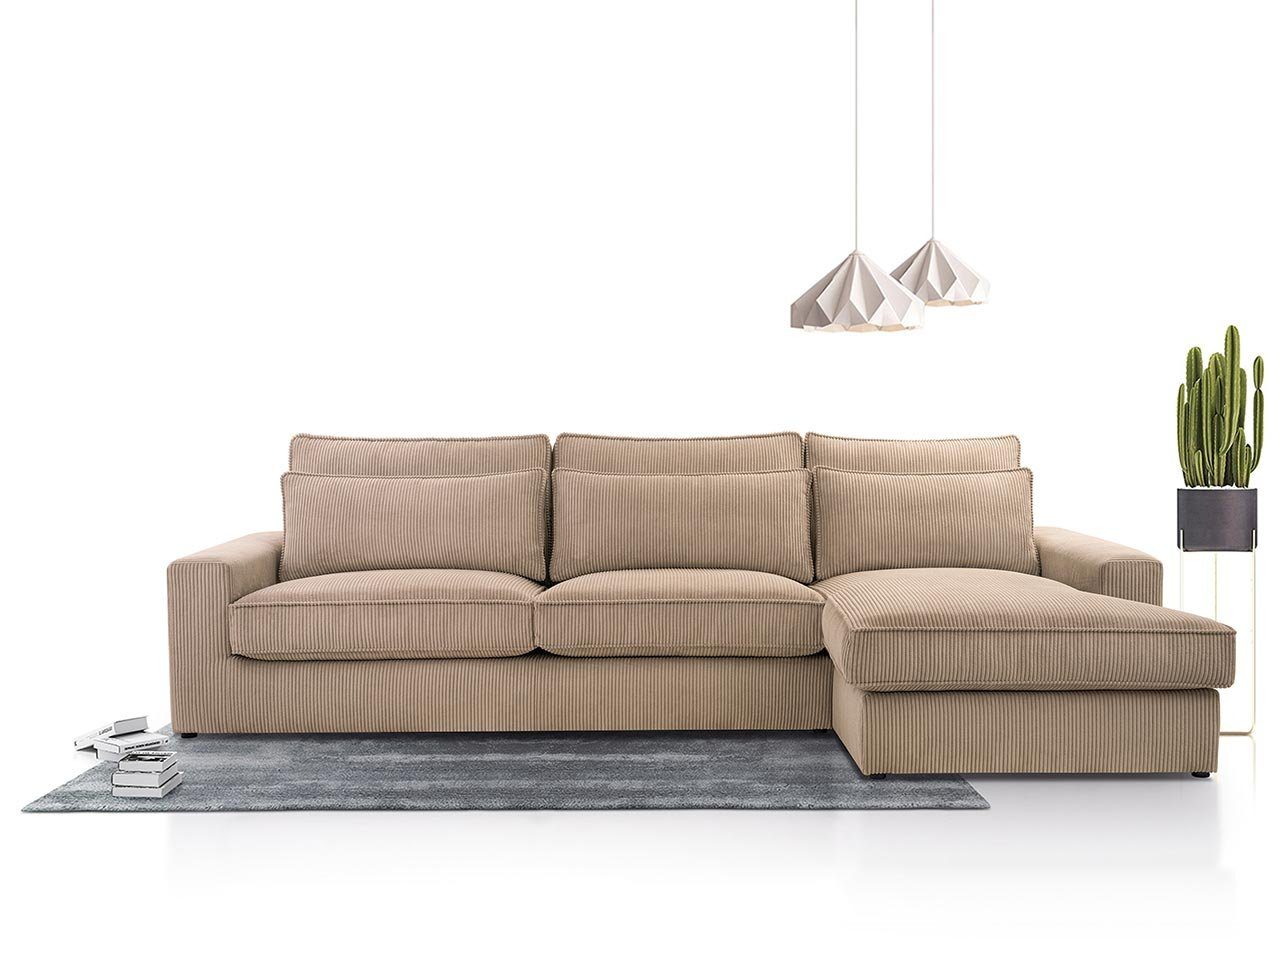 MKS MÖBEL Ecksofa CANES, L - Form Couch, mit lose Kissen, modern Ecksofa Braun Lincoln